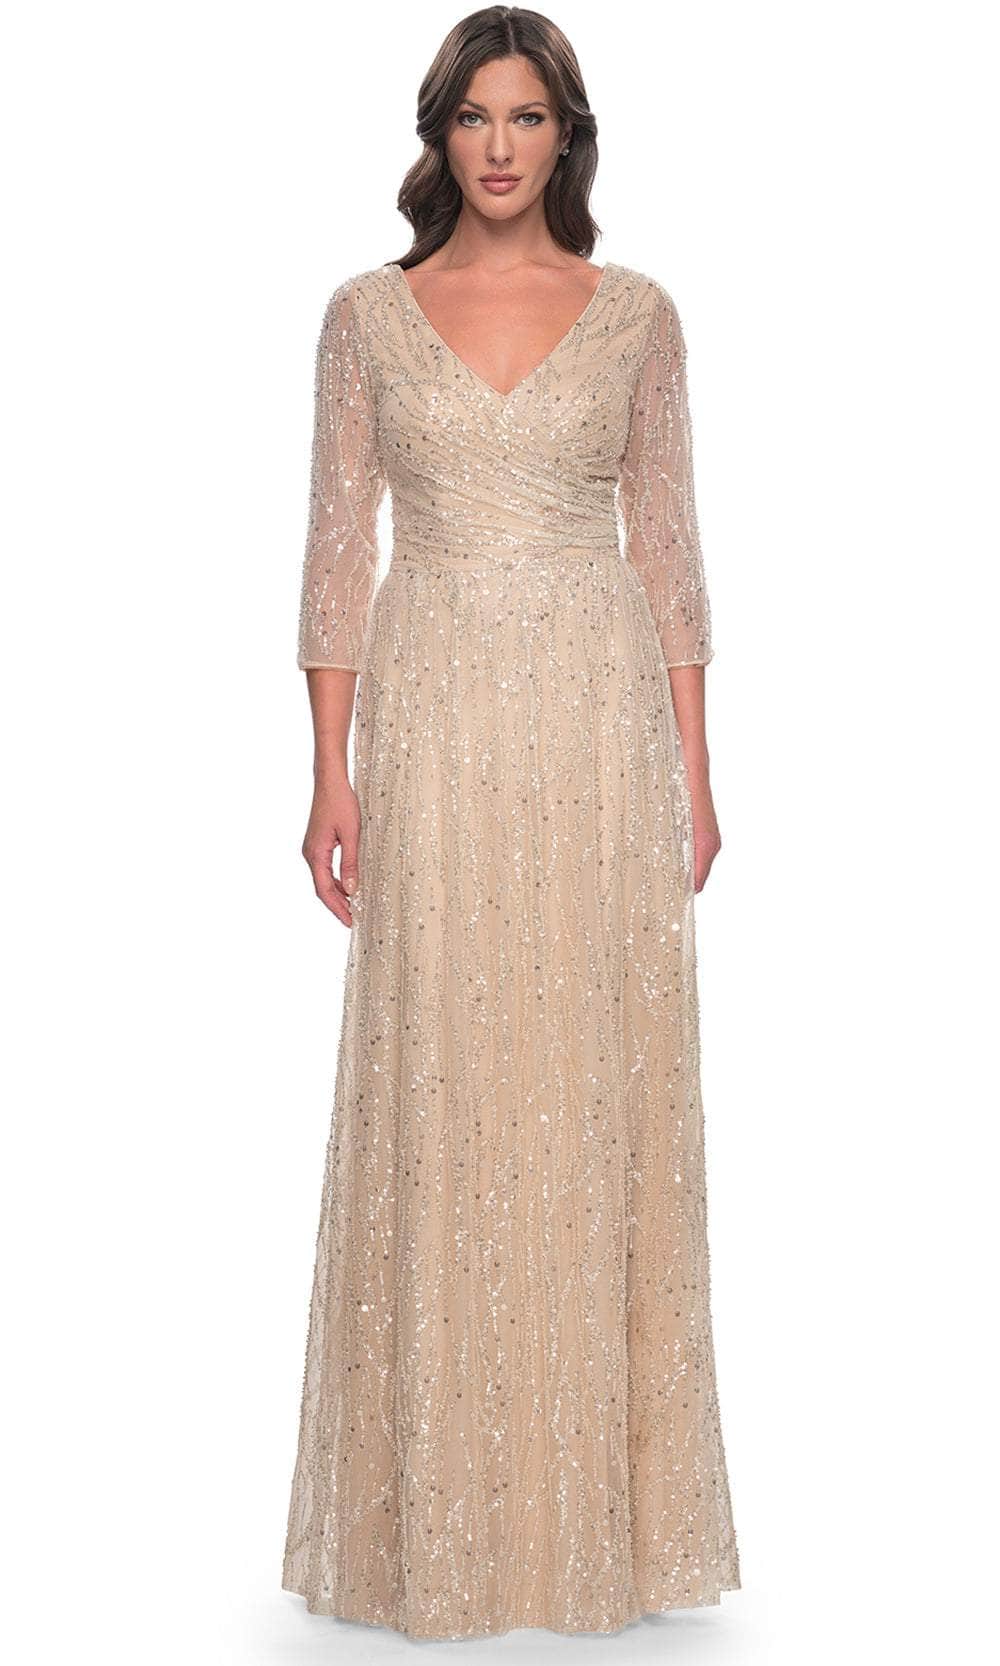 La Femme 30911 - Sequin V-Neck Formal Dress Mother of the Bride Dresses 2 / Champagne